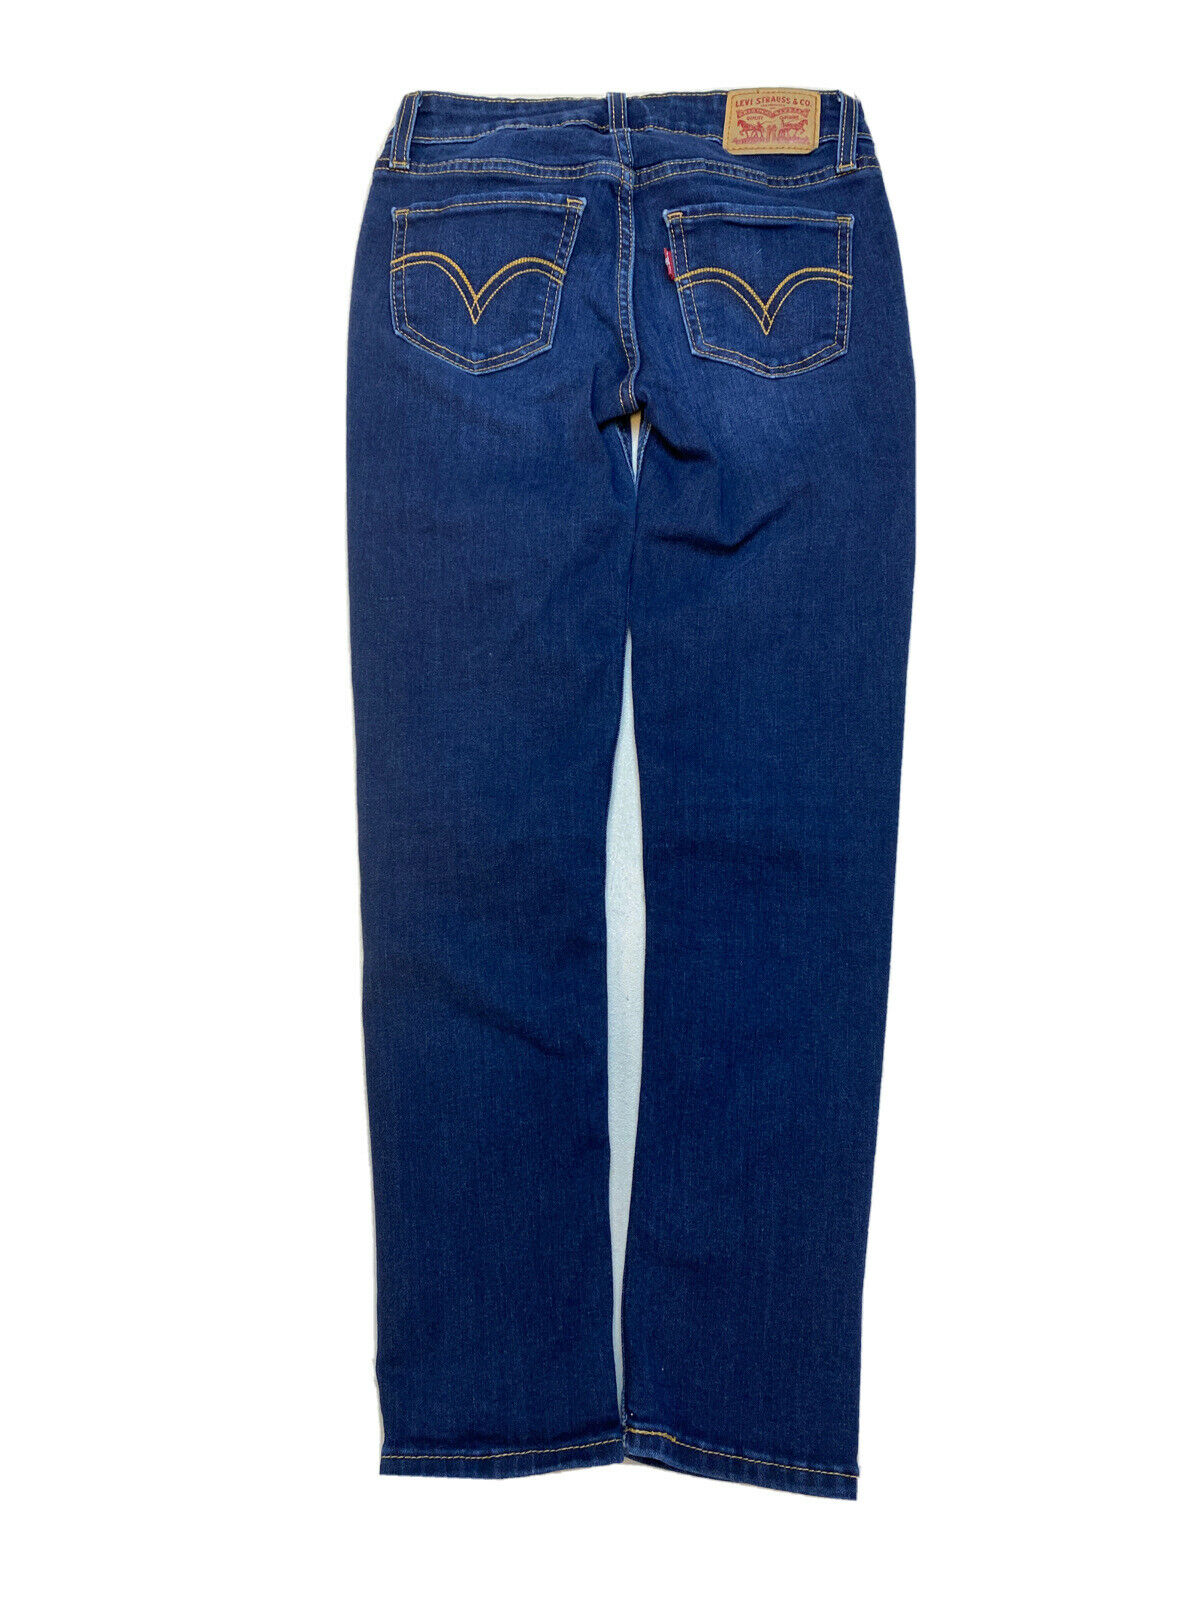 Levi's Women's Dark Wash Stretch Blue Denim Skinny Jeans Sz 25